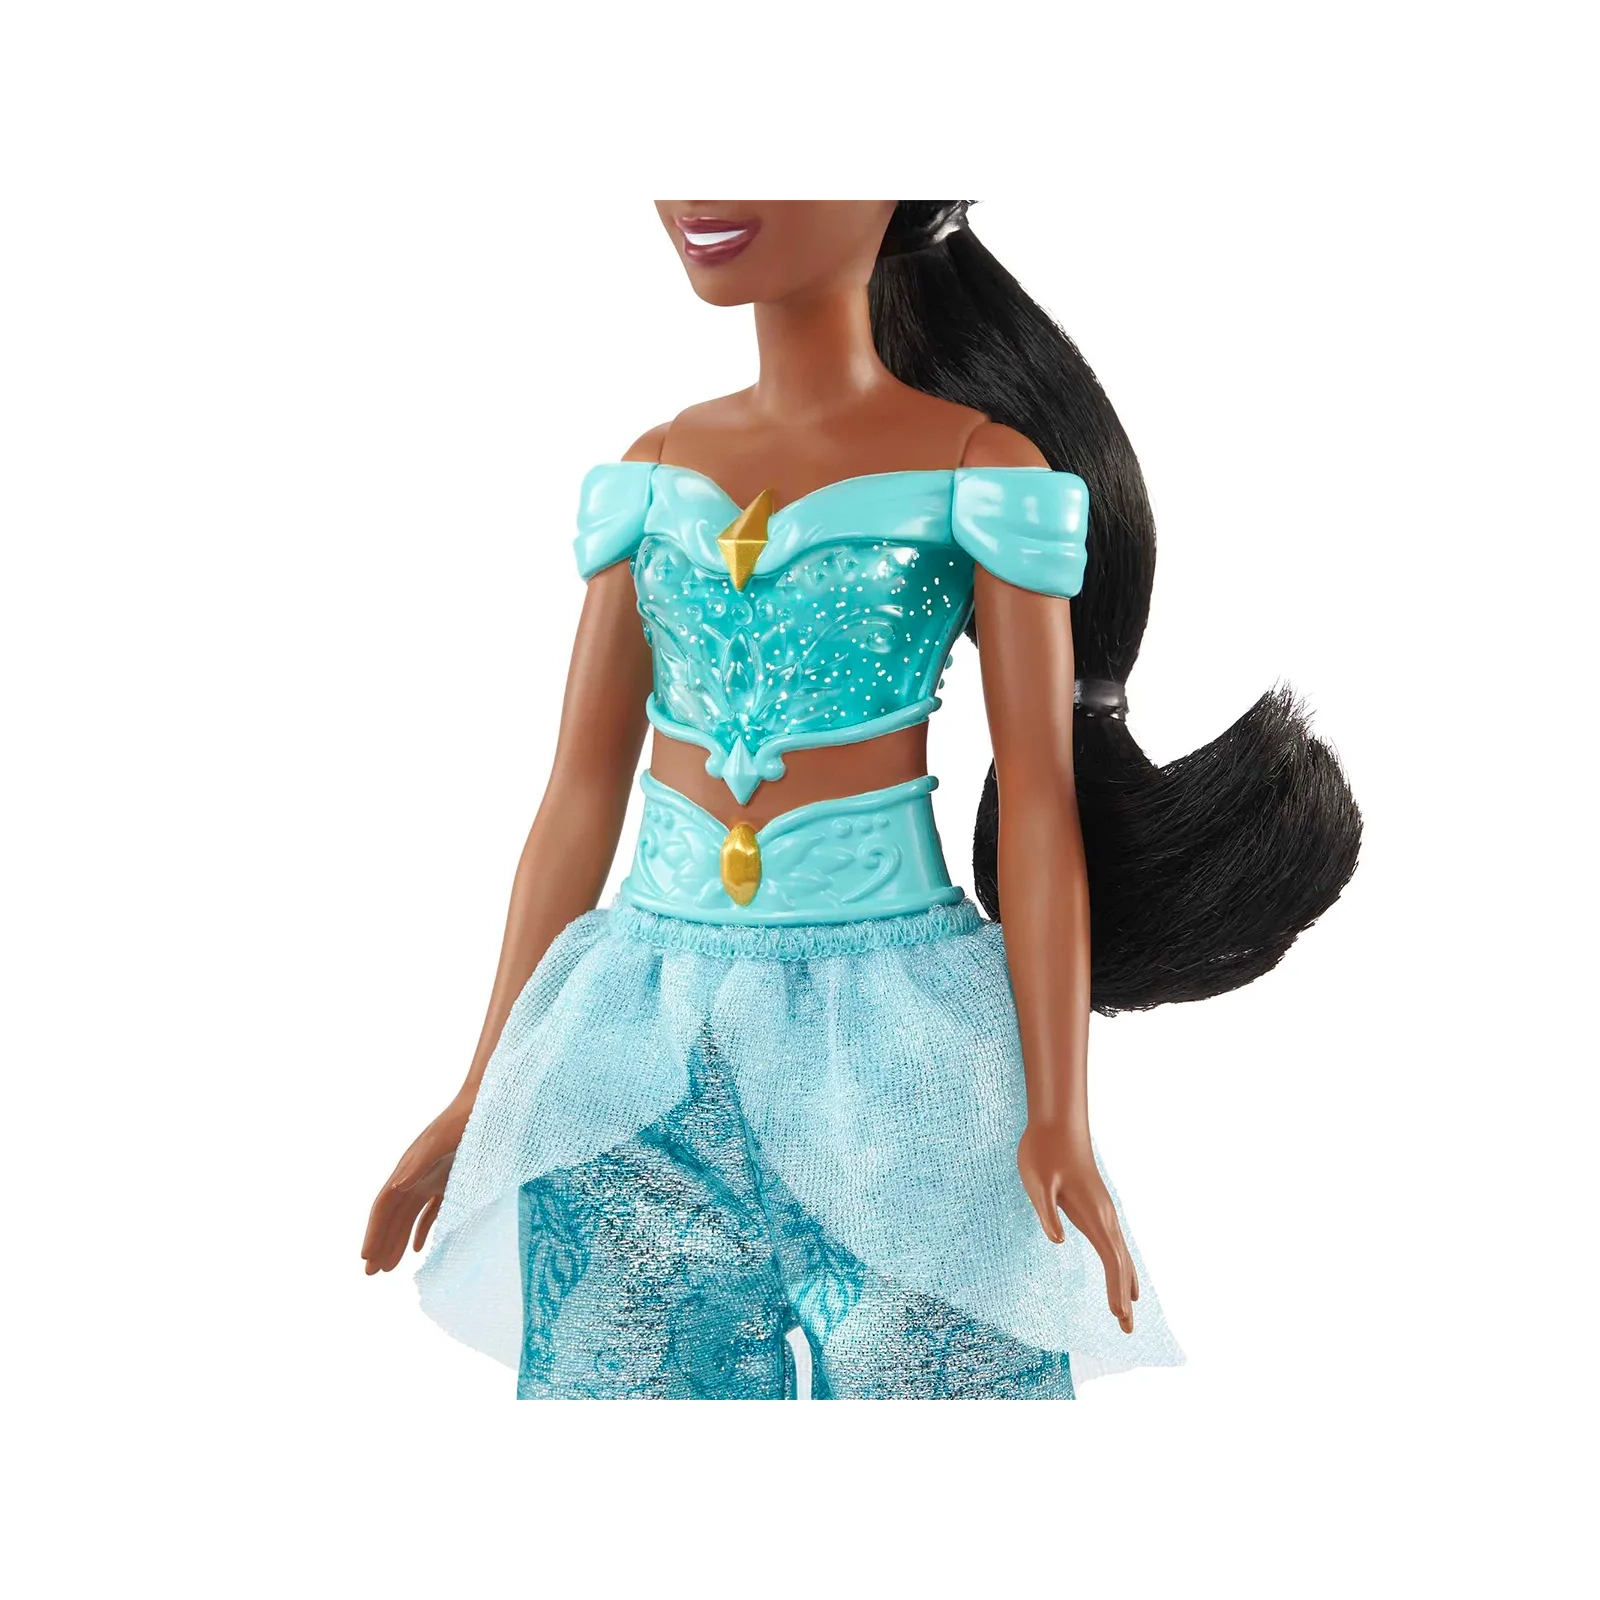 Кукла Disney Princess принцесса Жасмин (HLW12) изображение 3